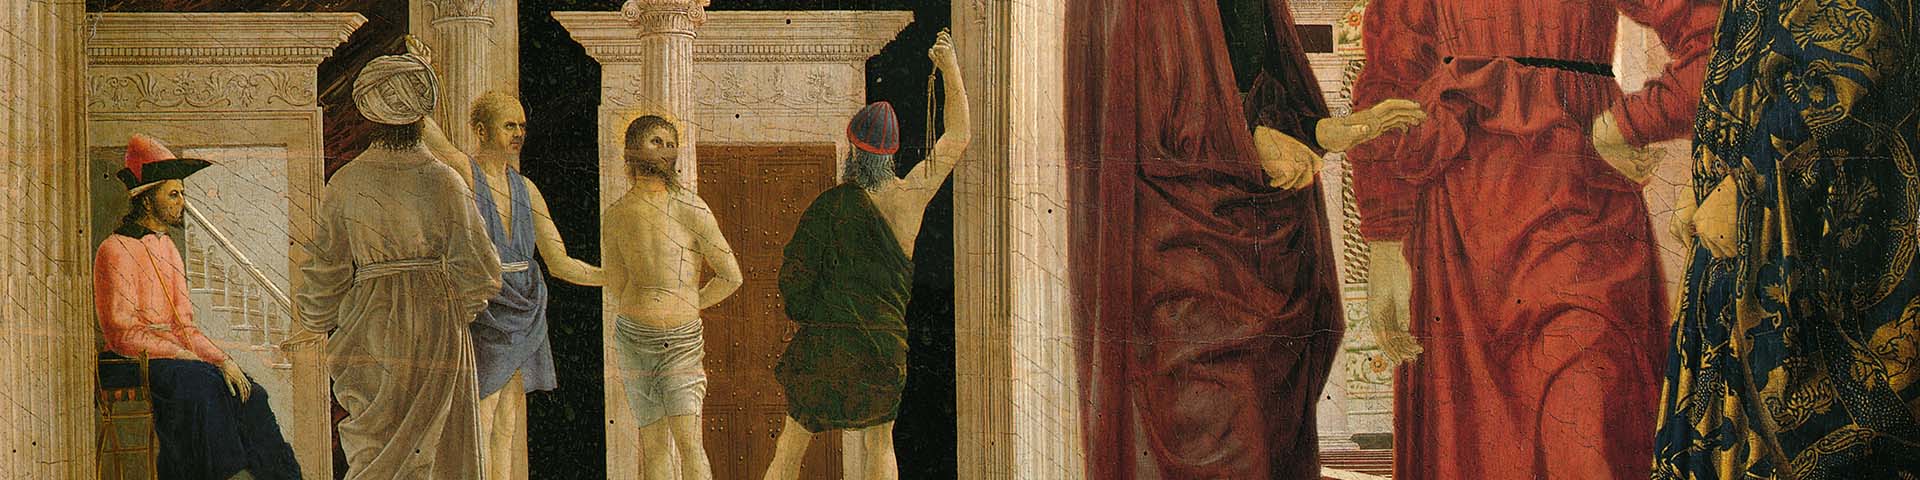 Piero della Francesca, Flagellazione di Cristo